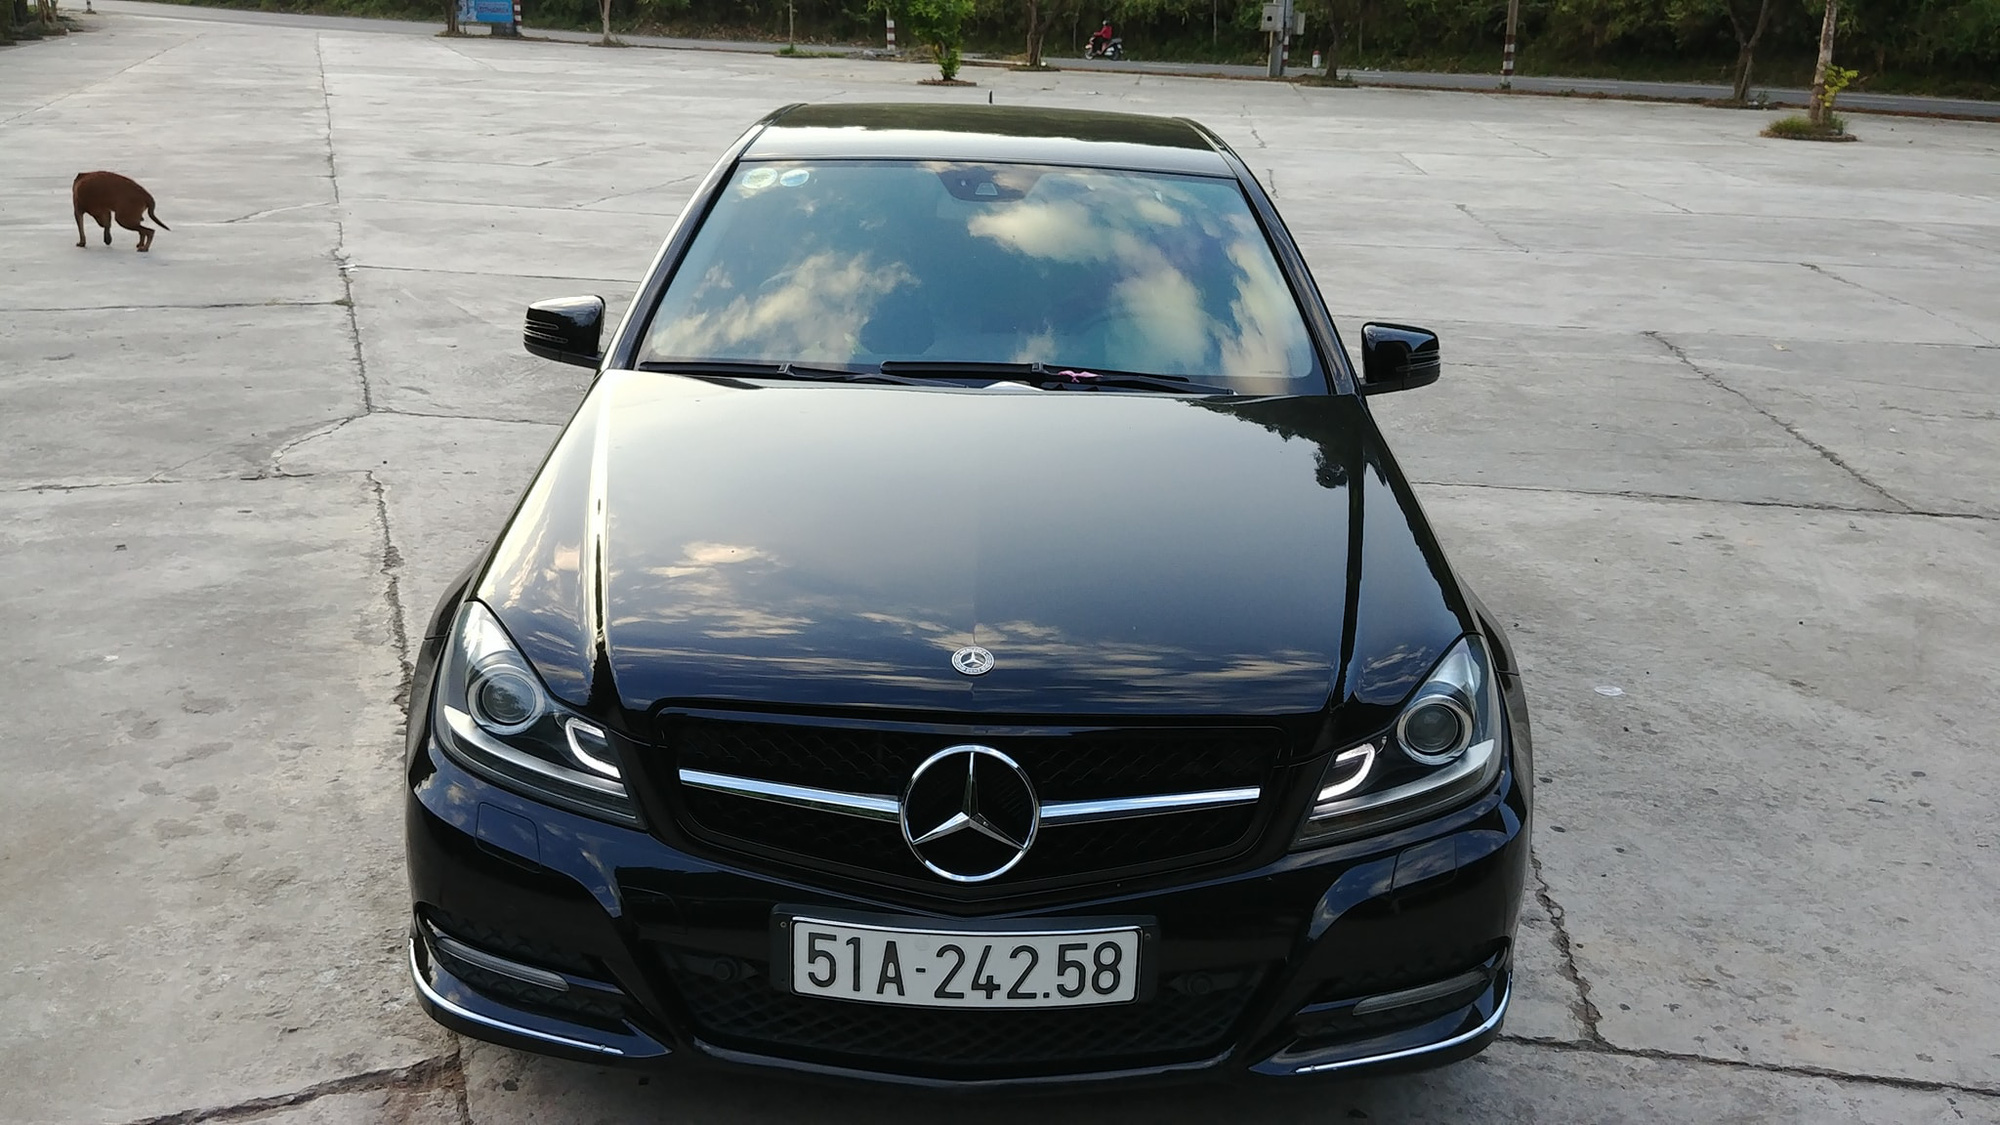 Bán Mercedes C200 2012 tự động màu Xám full  Đức Kí Gửi Mua Bán Xe   MBN315752  0966182558